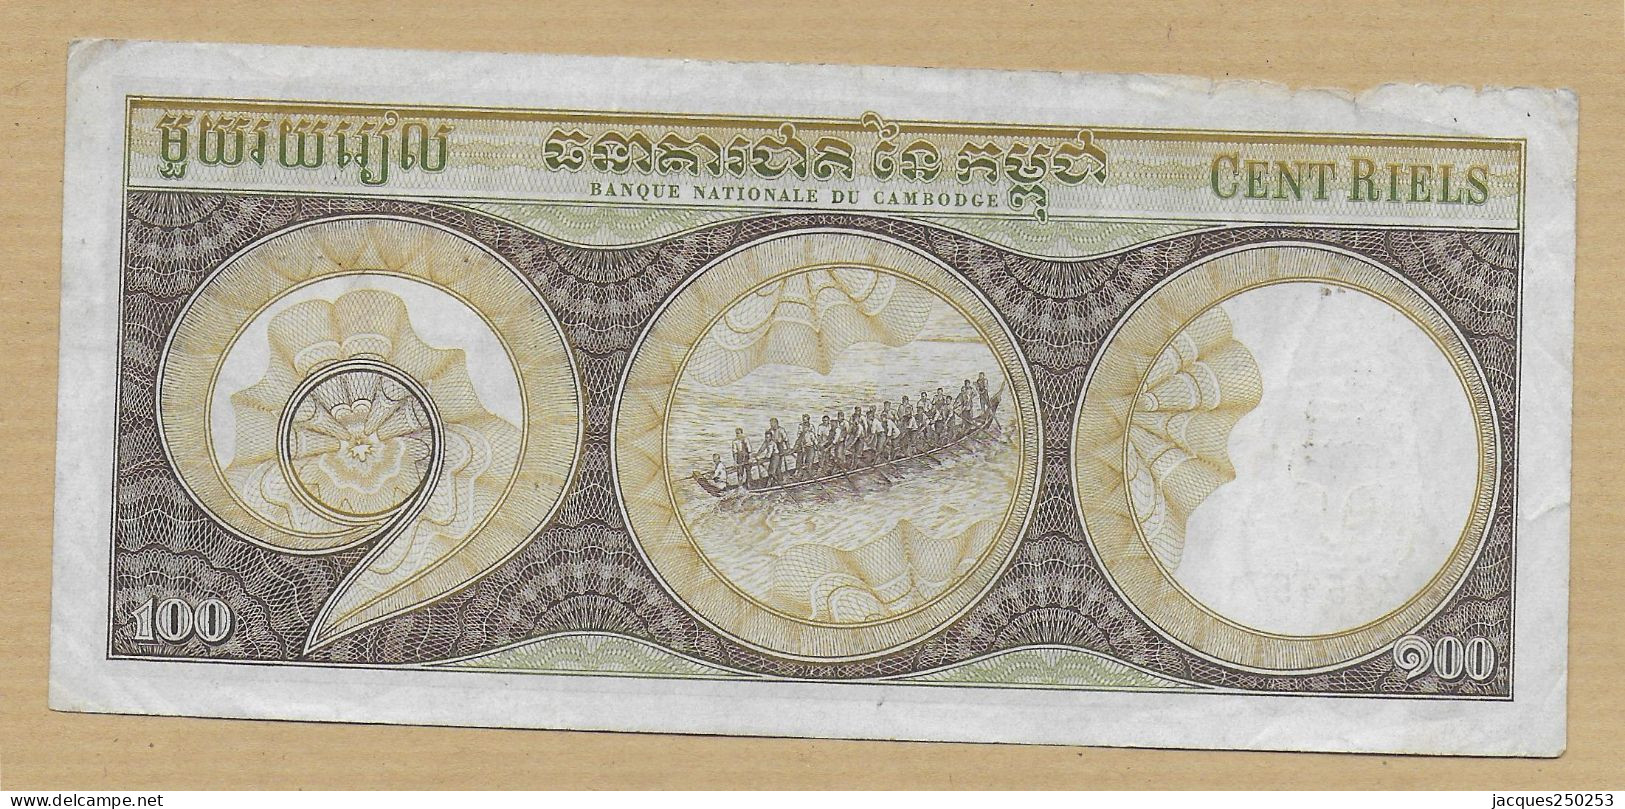 100 Riels Cambodge - Cambodia